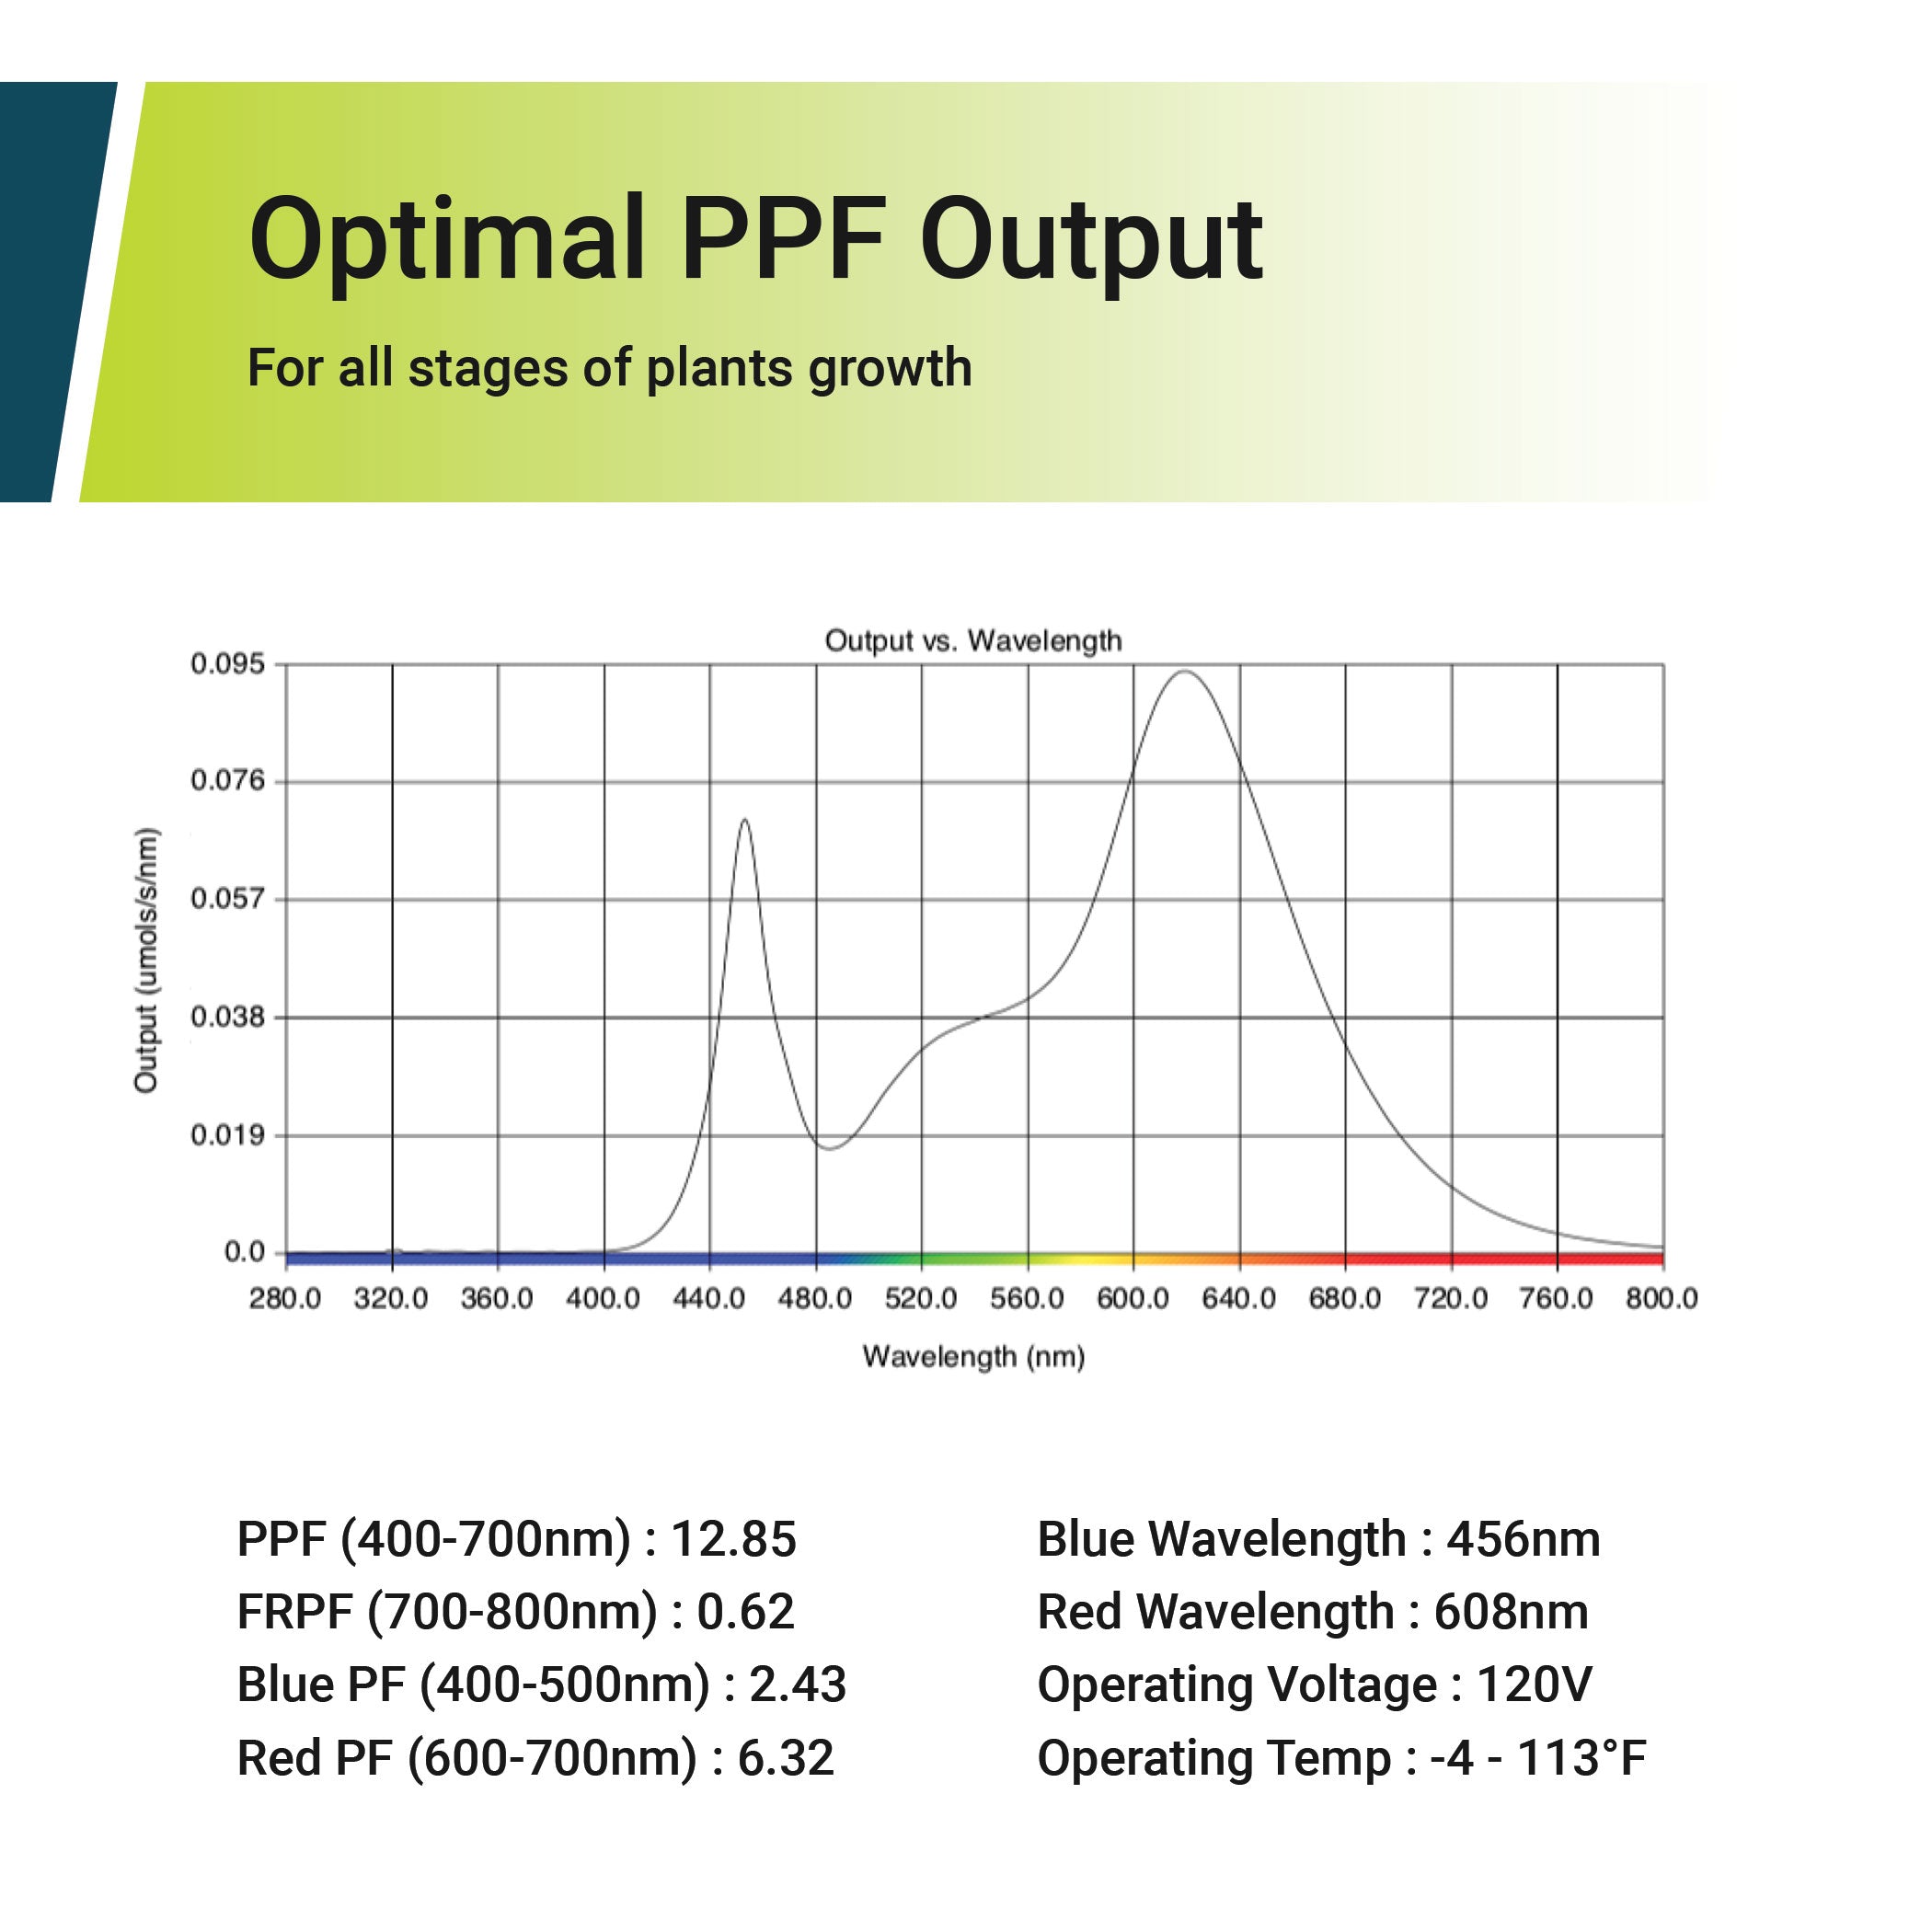 12.85 PPF 9-Watt LED Grow Bulb, Full Spectrum, E26